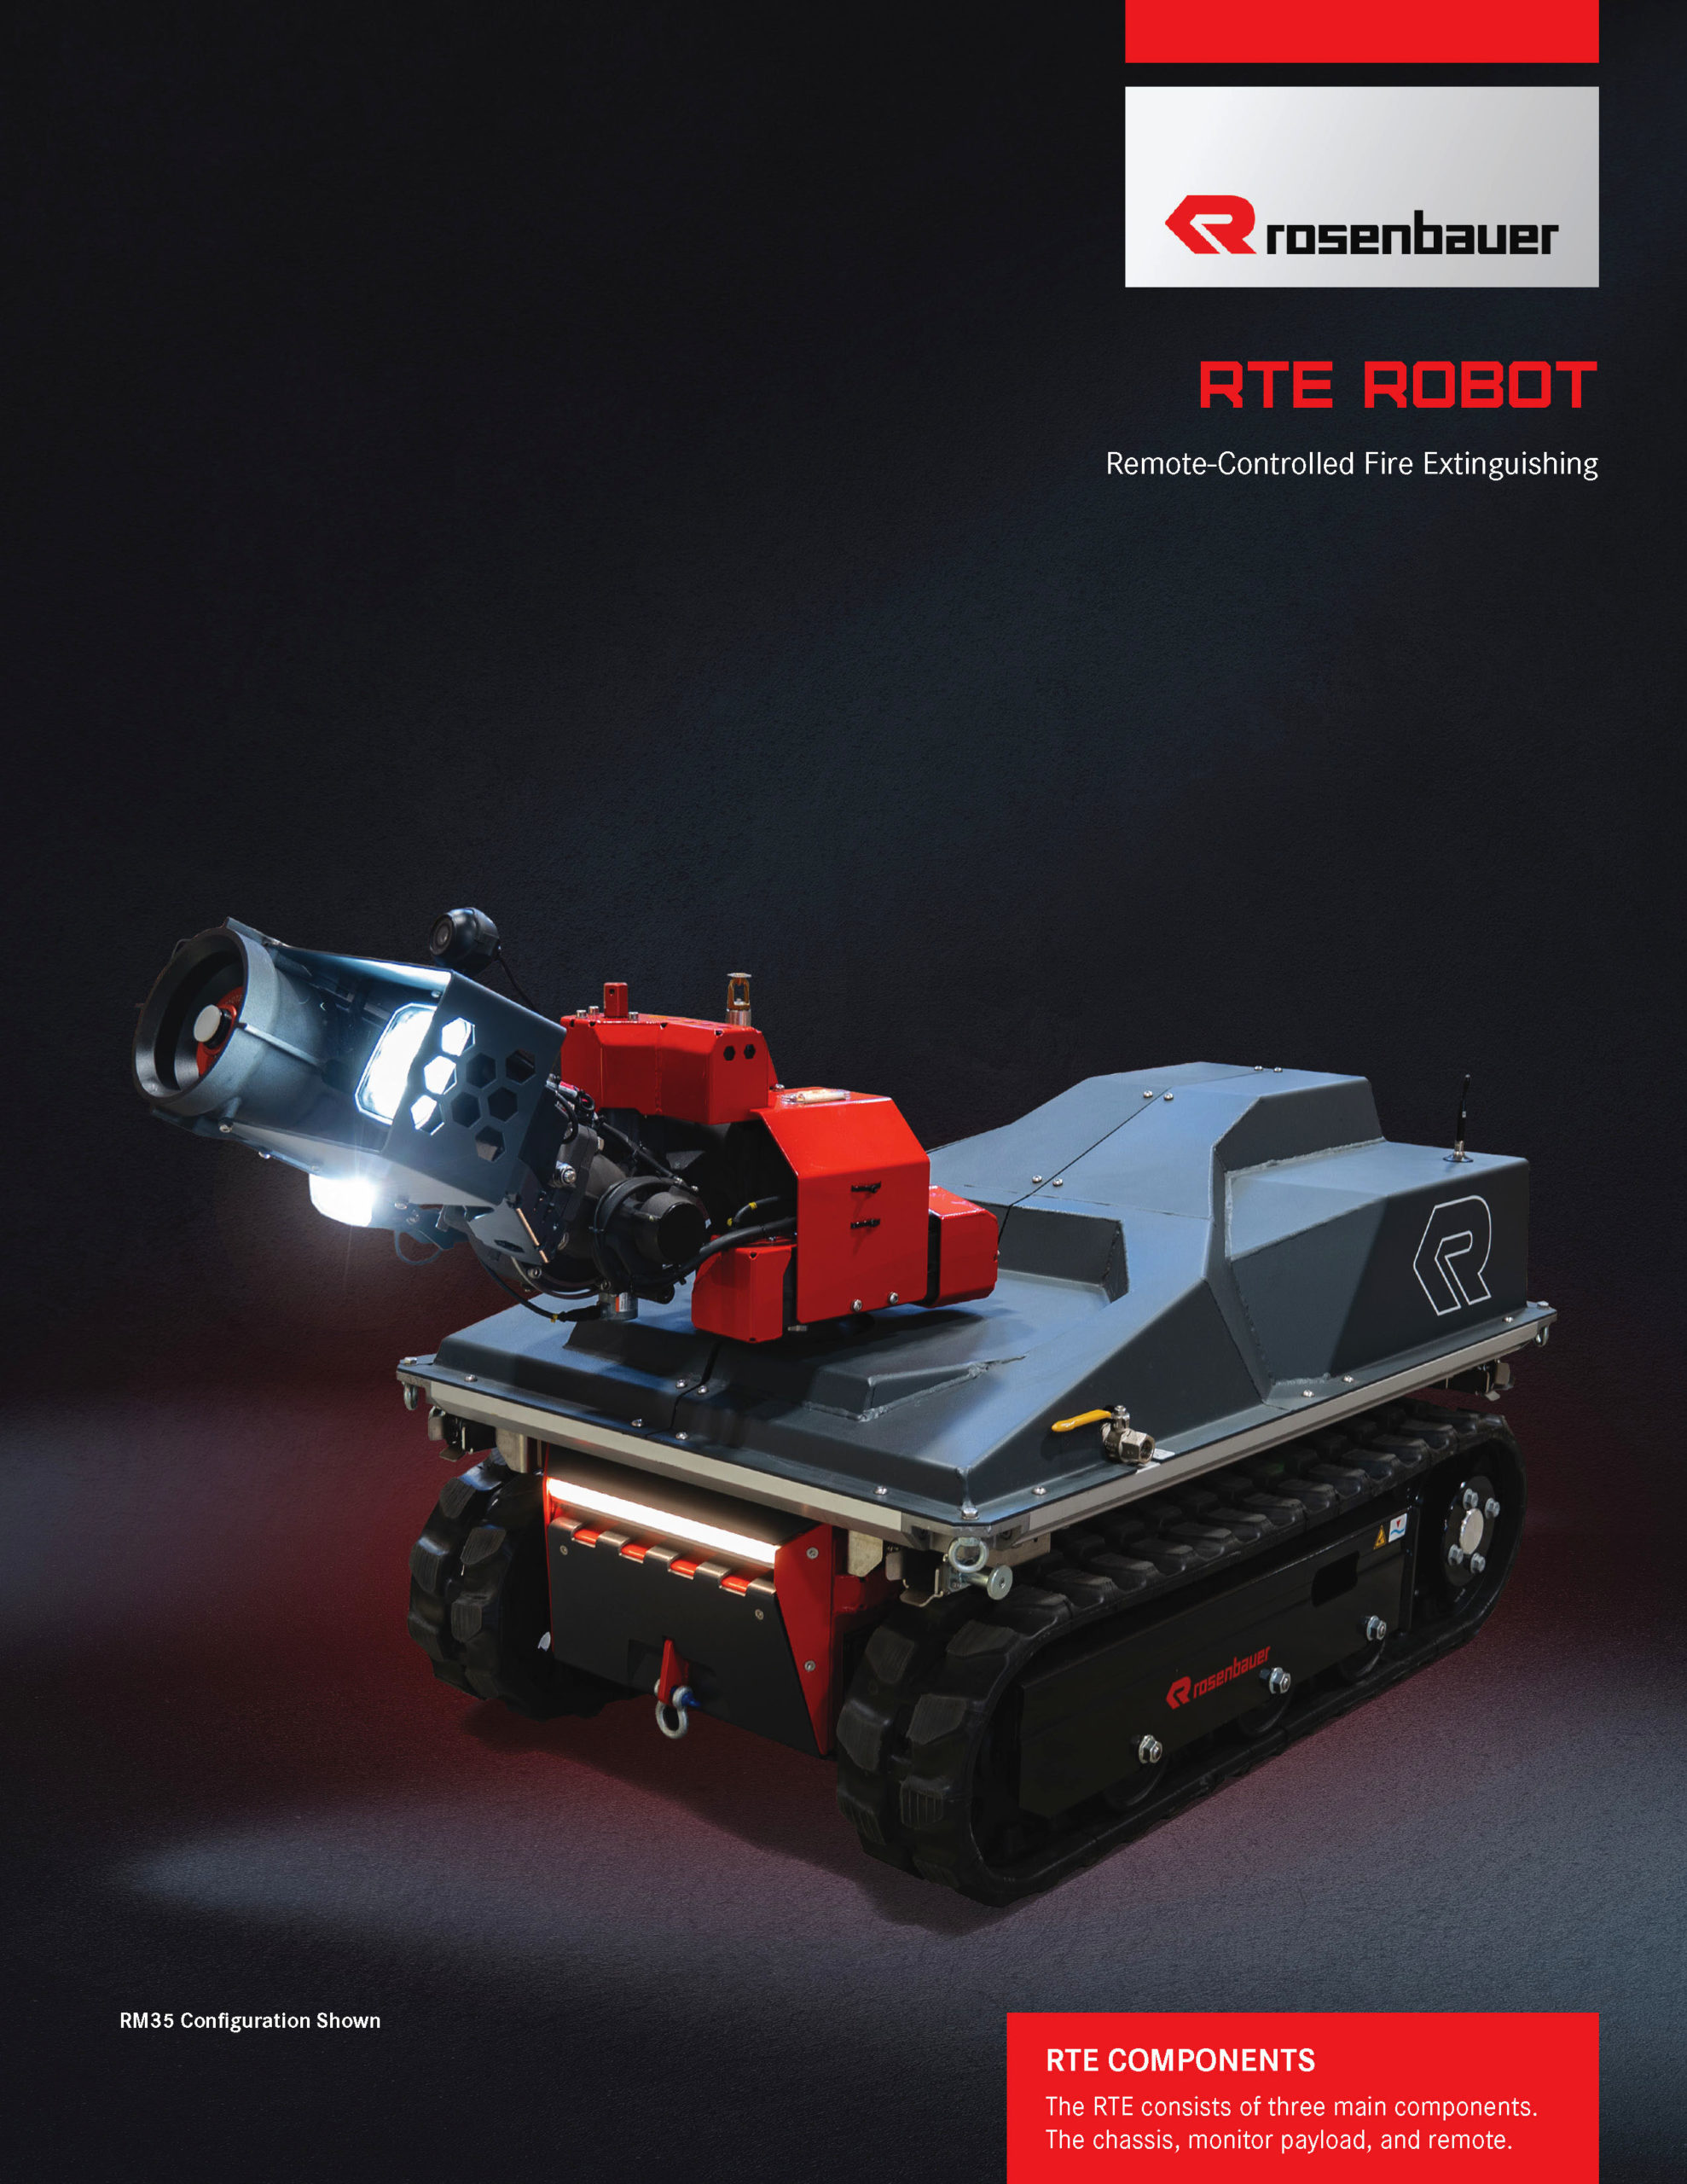 Rosenbauer RTE Robot